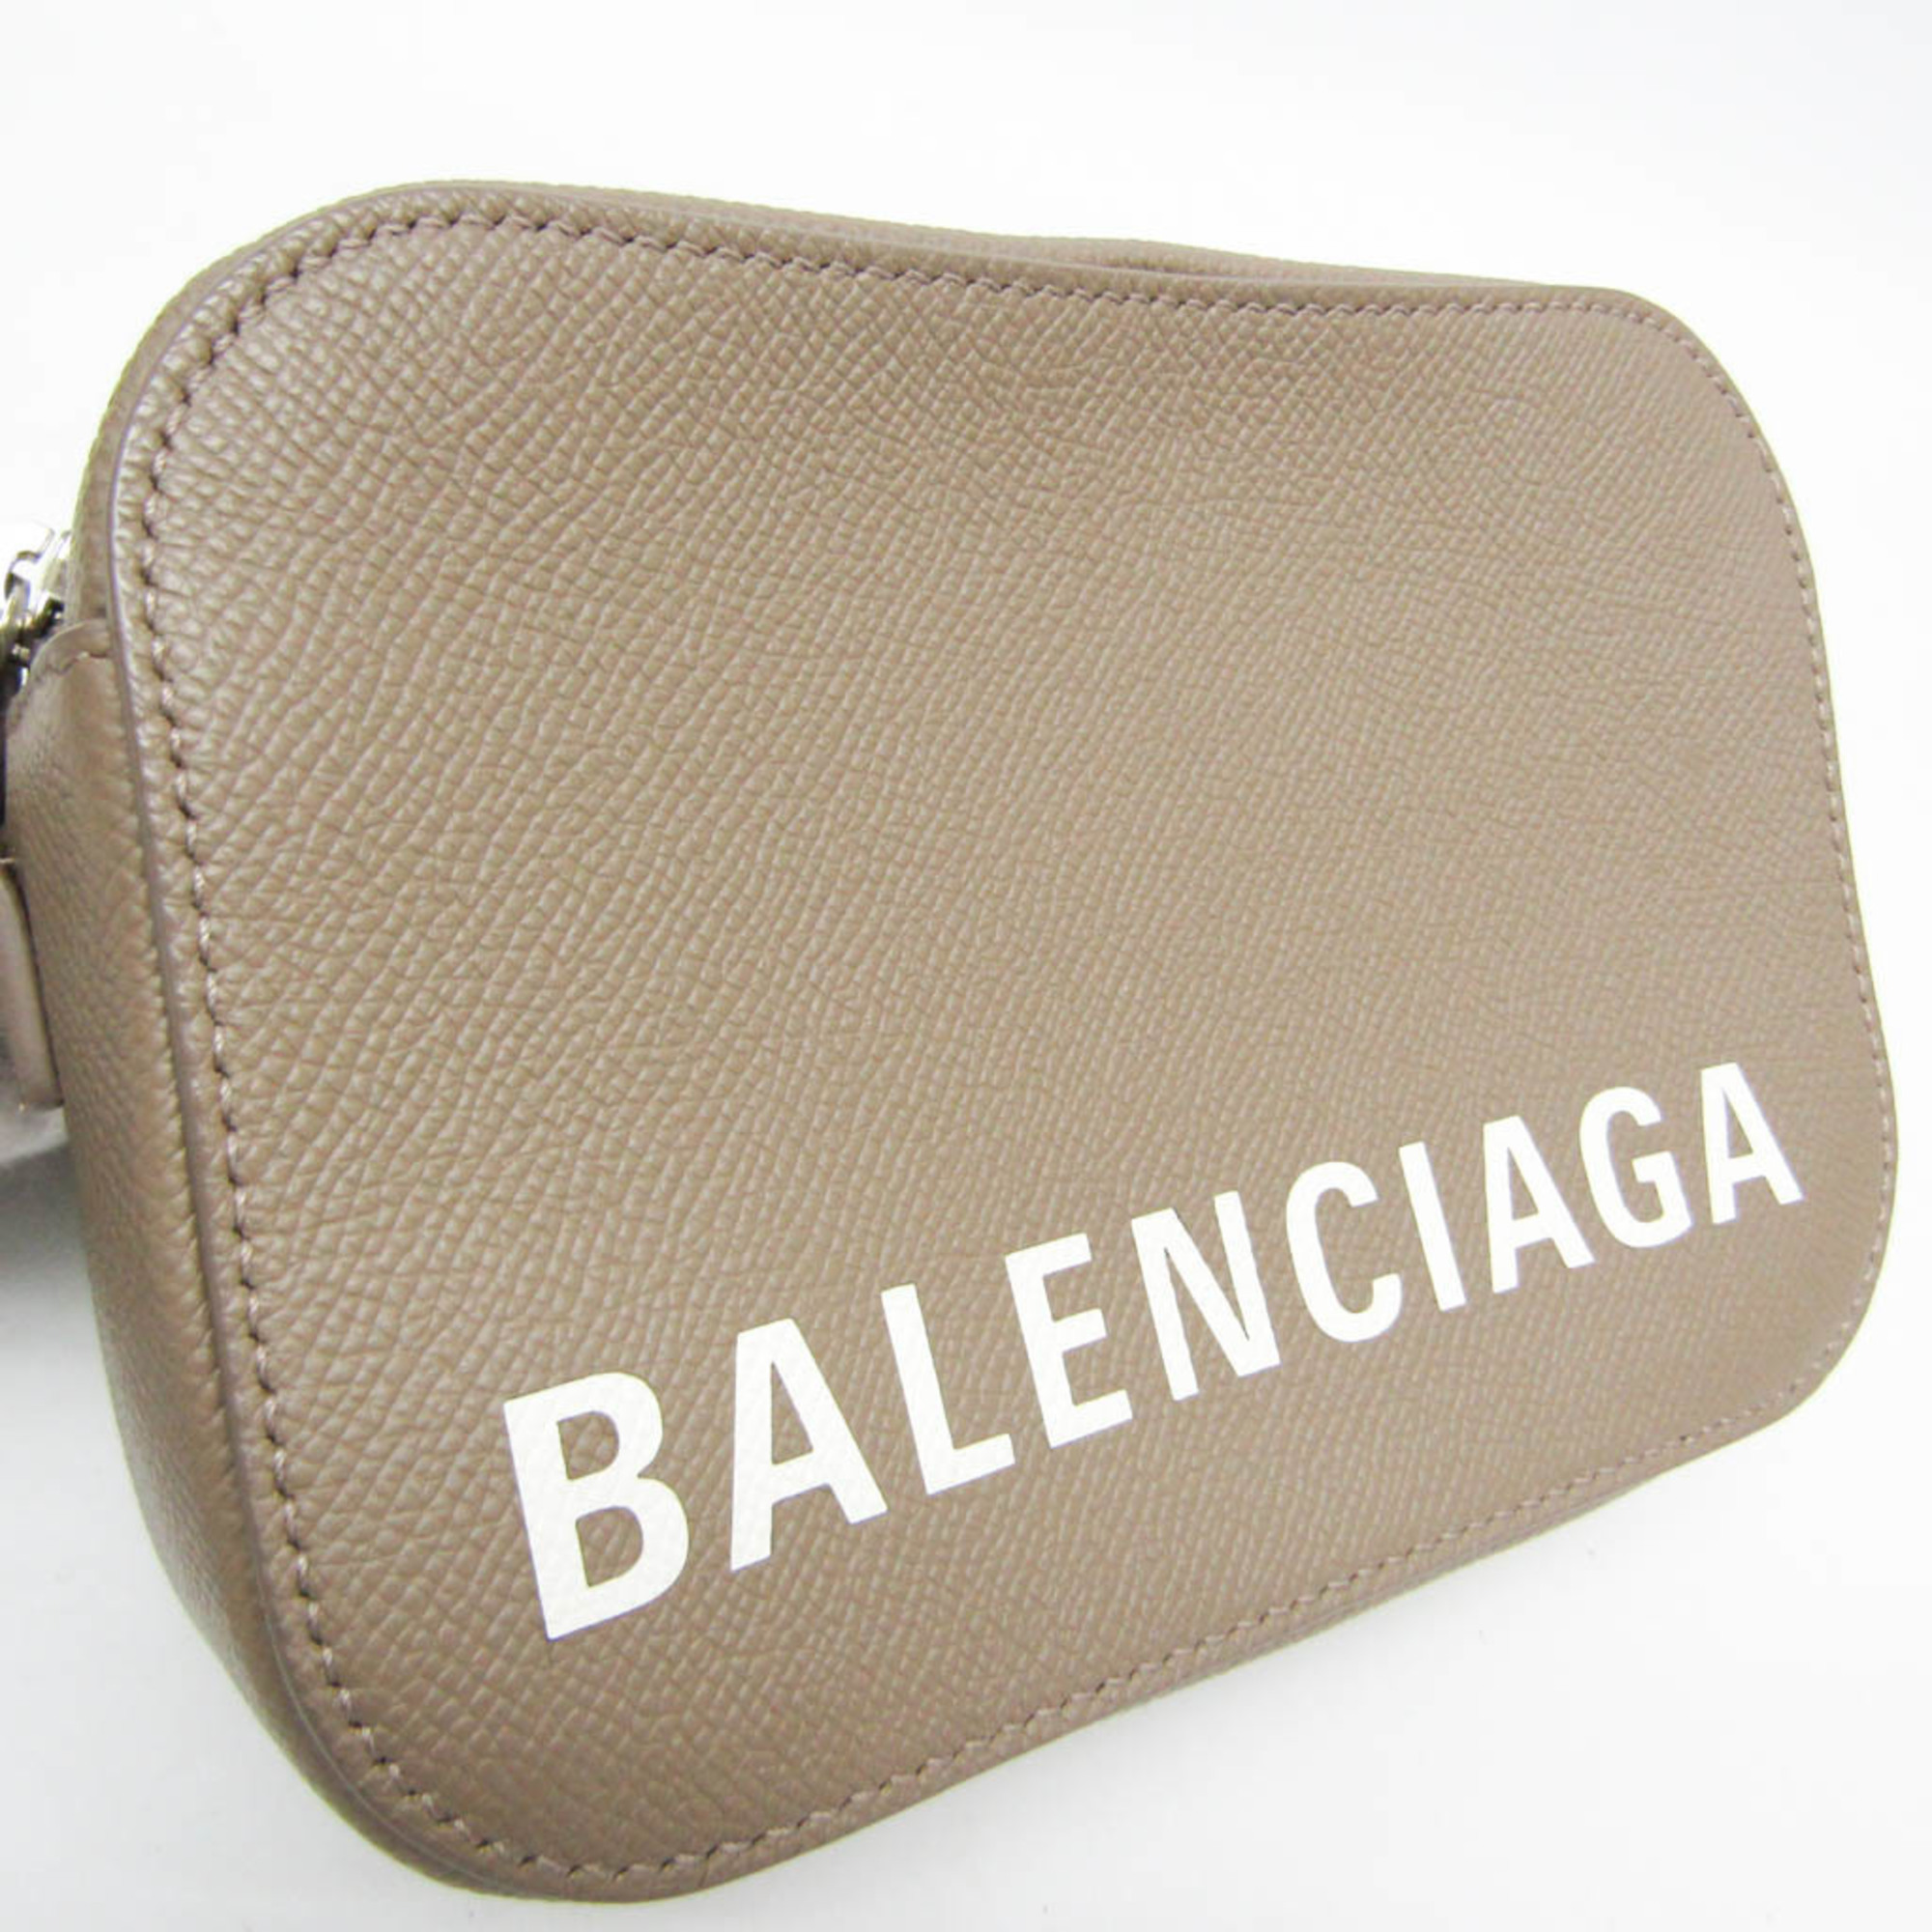 バレンシアガ(Balenciaga) VILLE CAMERA BAG XS 558171 レディース レザー ショルダーバッグ グレージュ